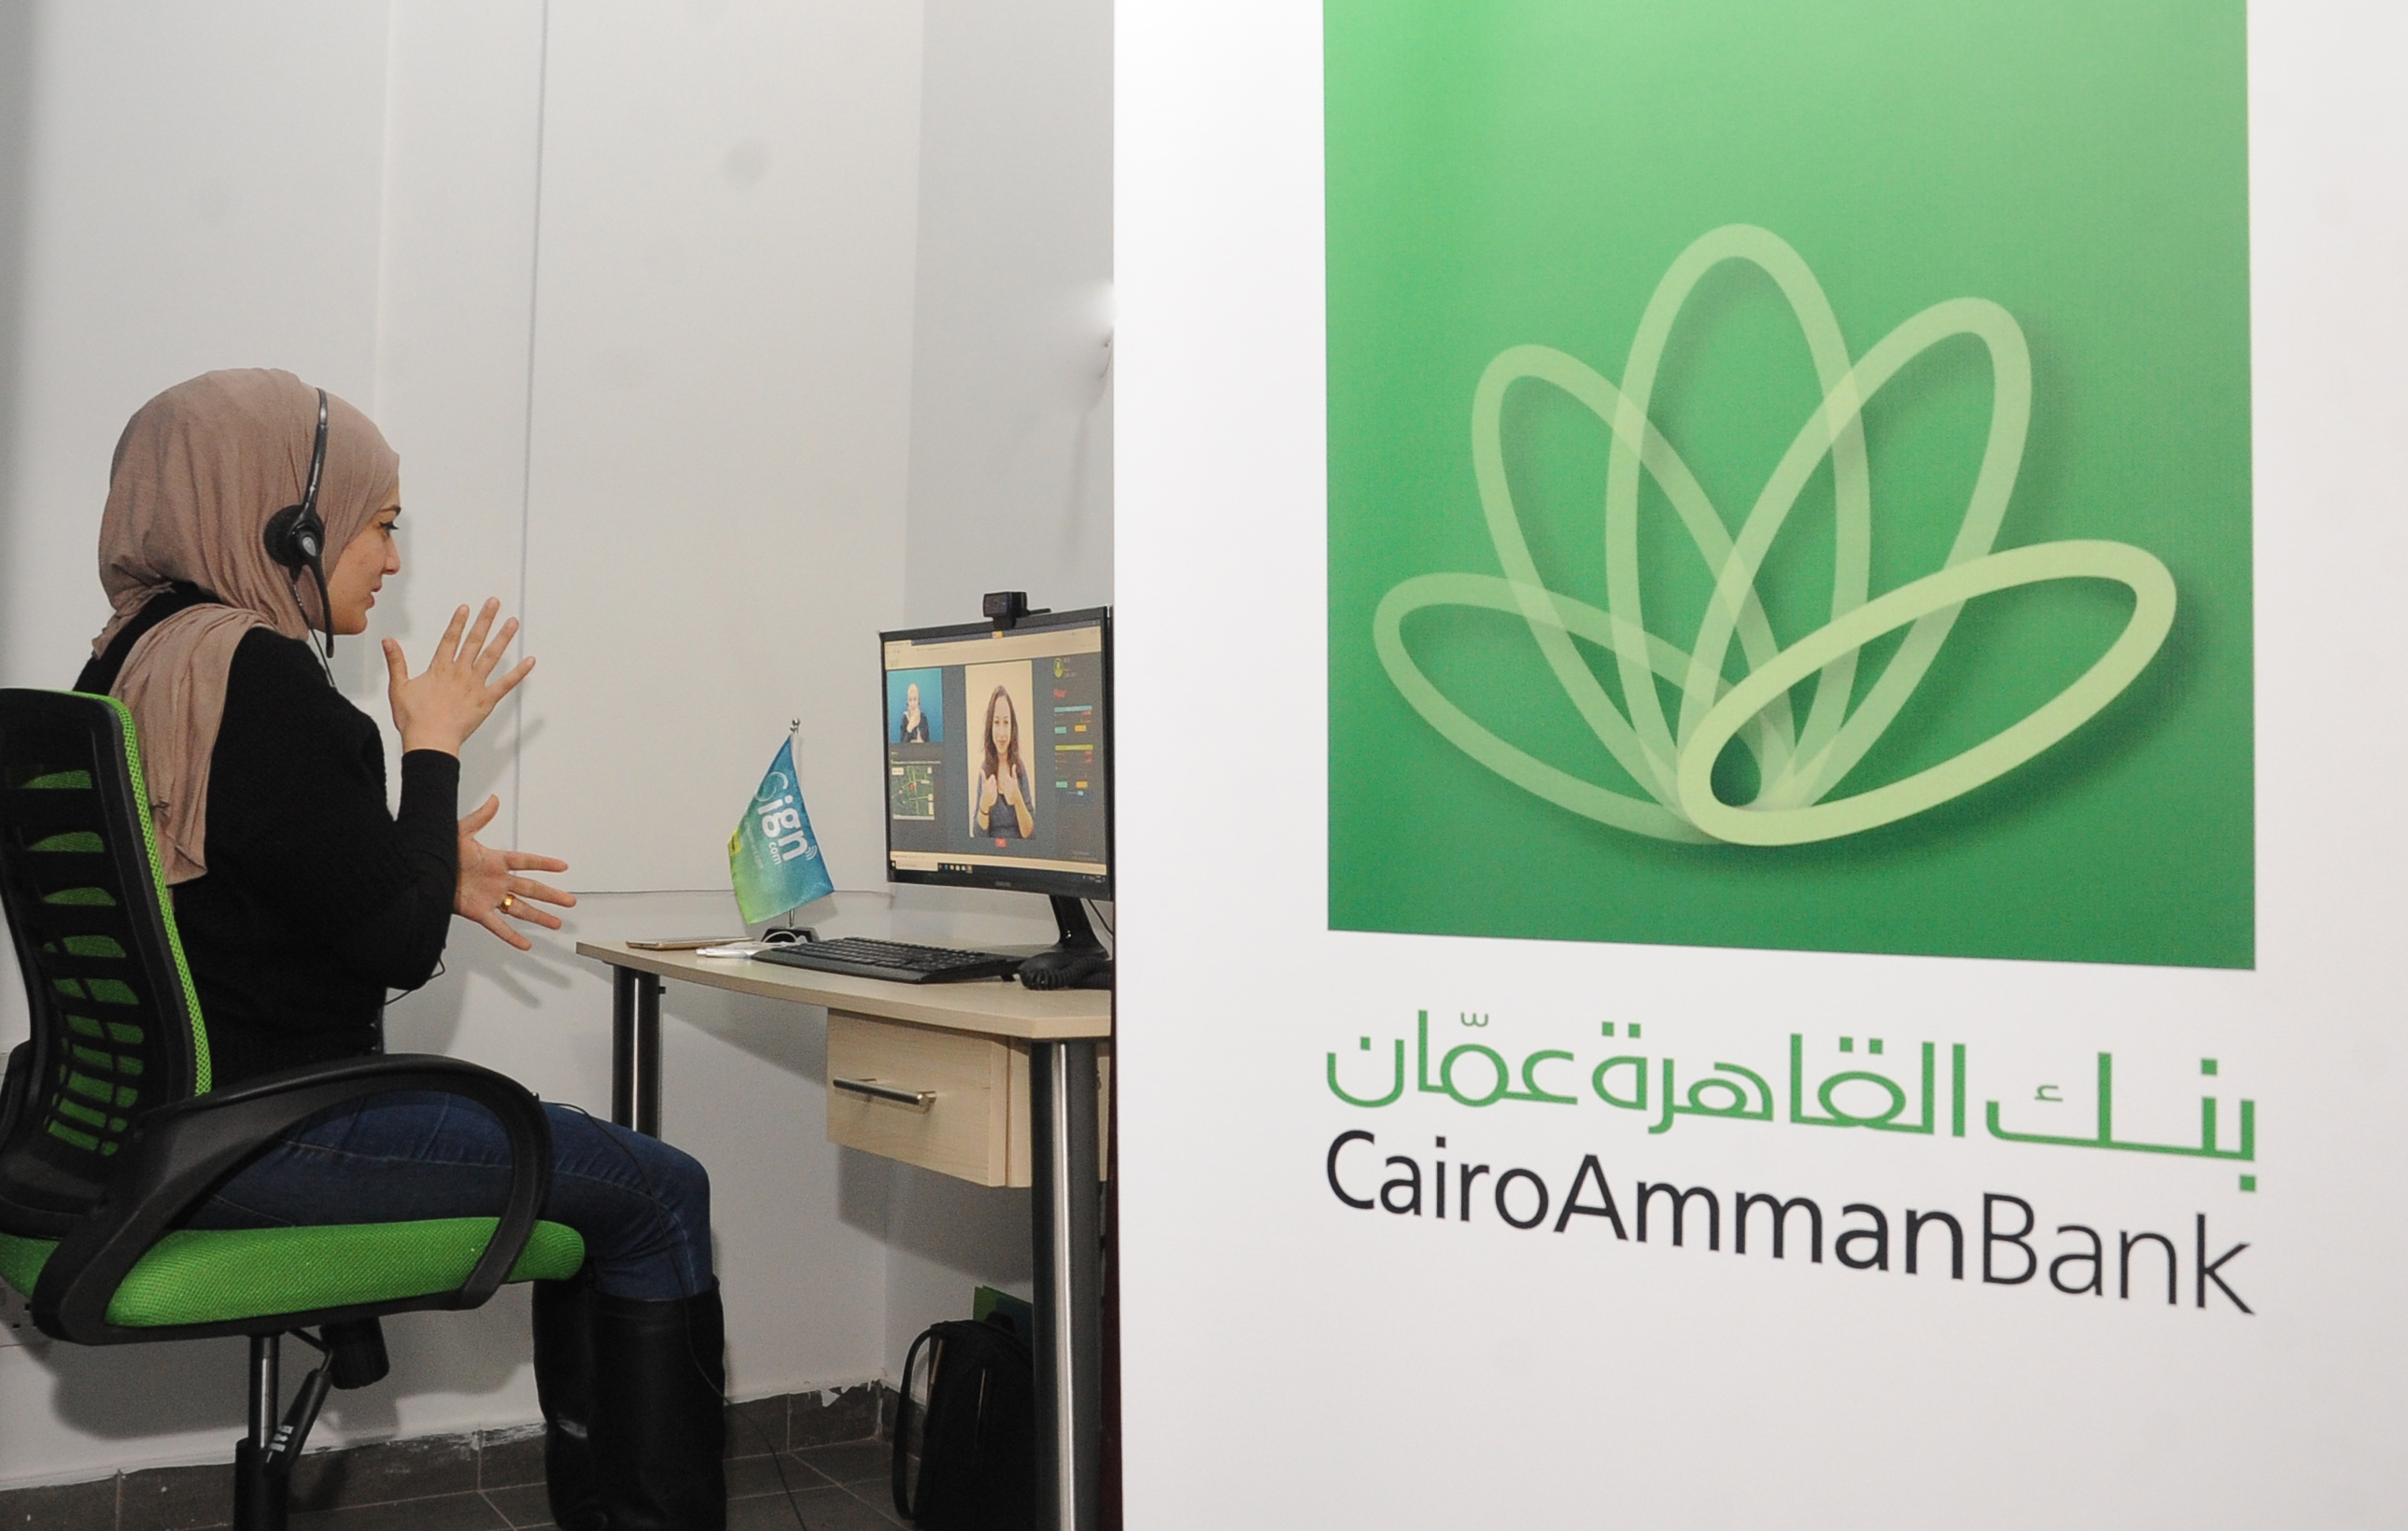 بنك القاهرة عمان الأول في الشرق الاوسط يترجم إشارات ذوي اللإعاقة السمعية الى لغة مسموعة